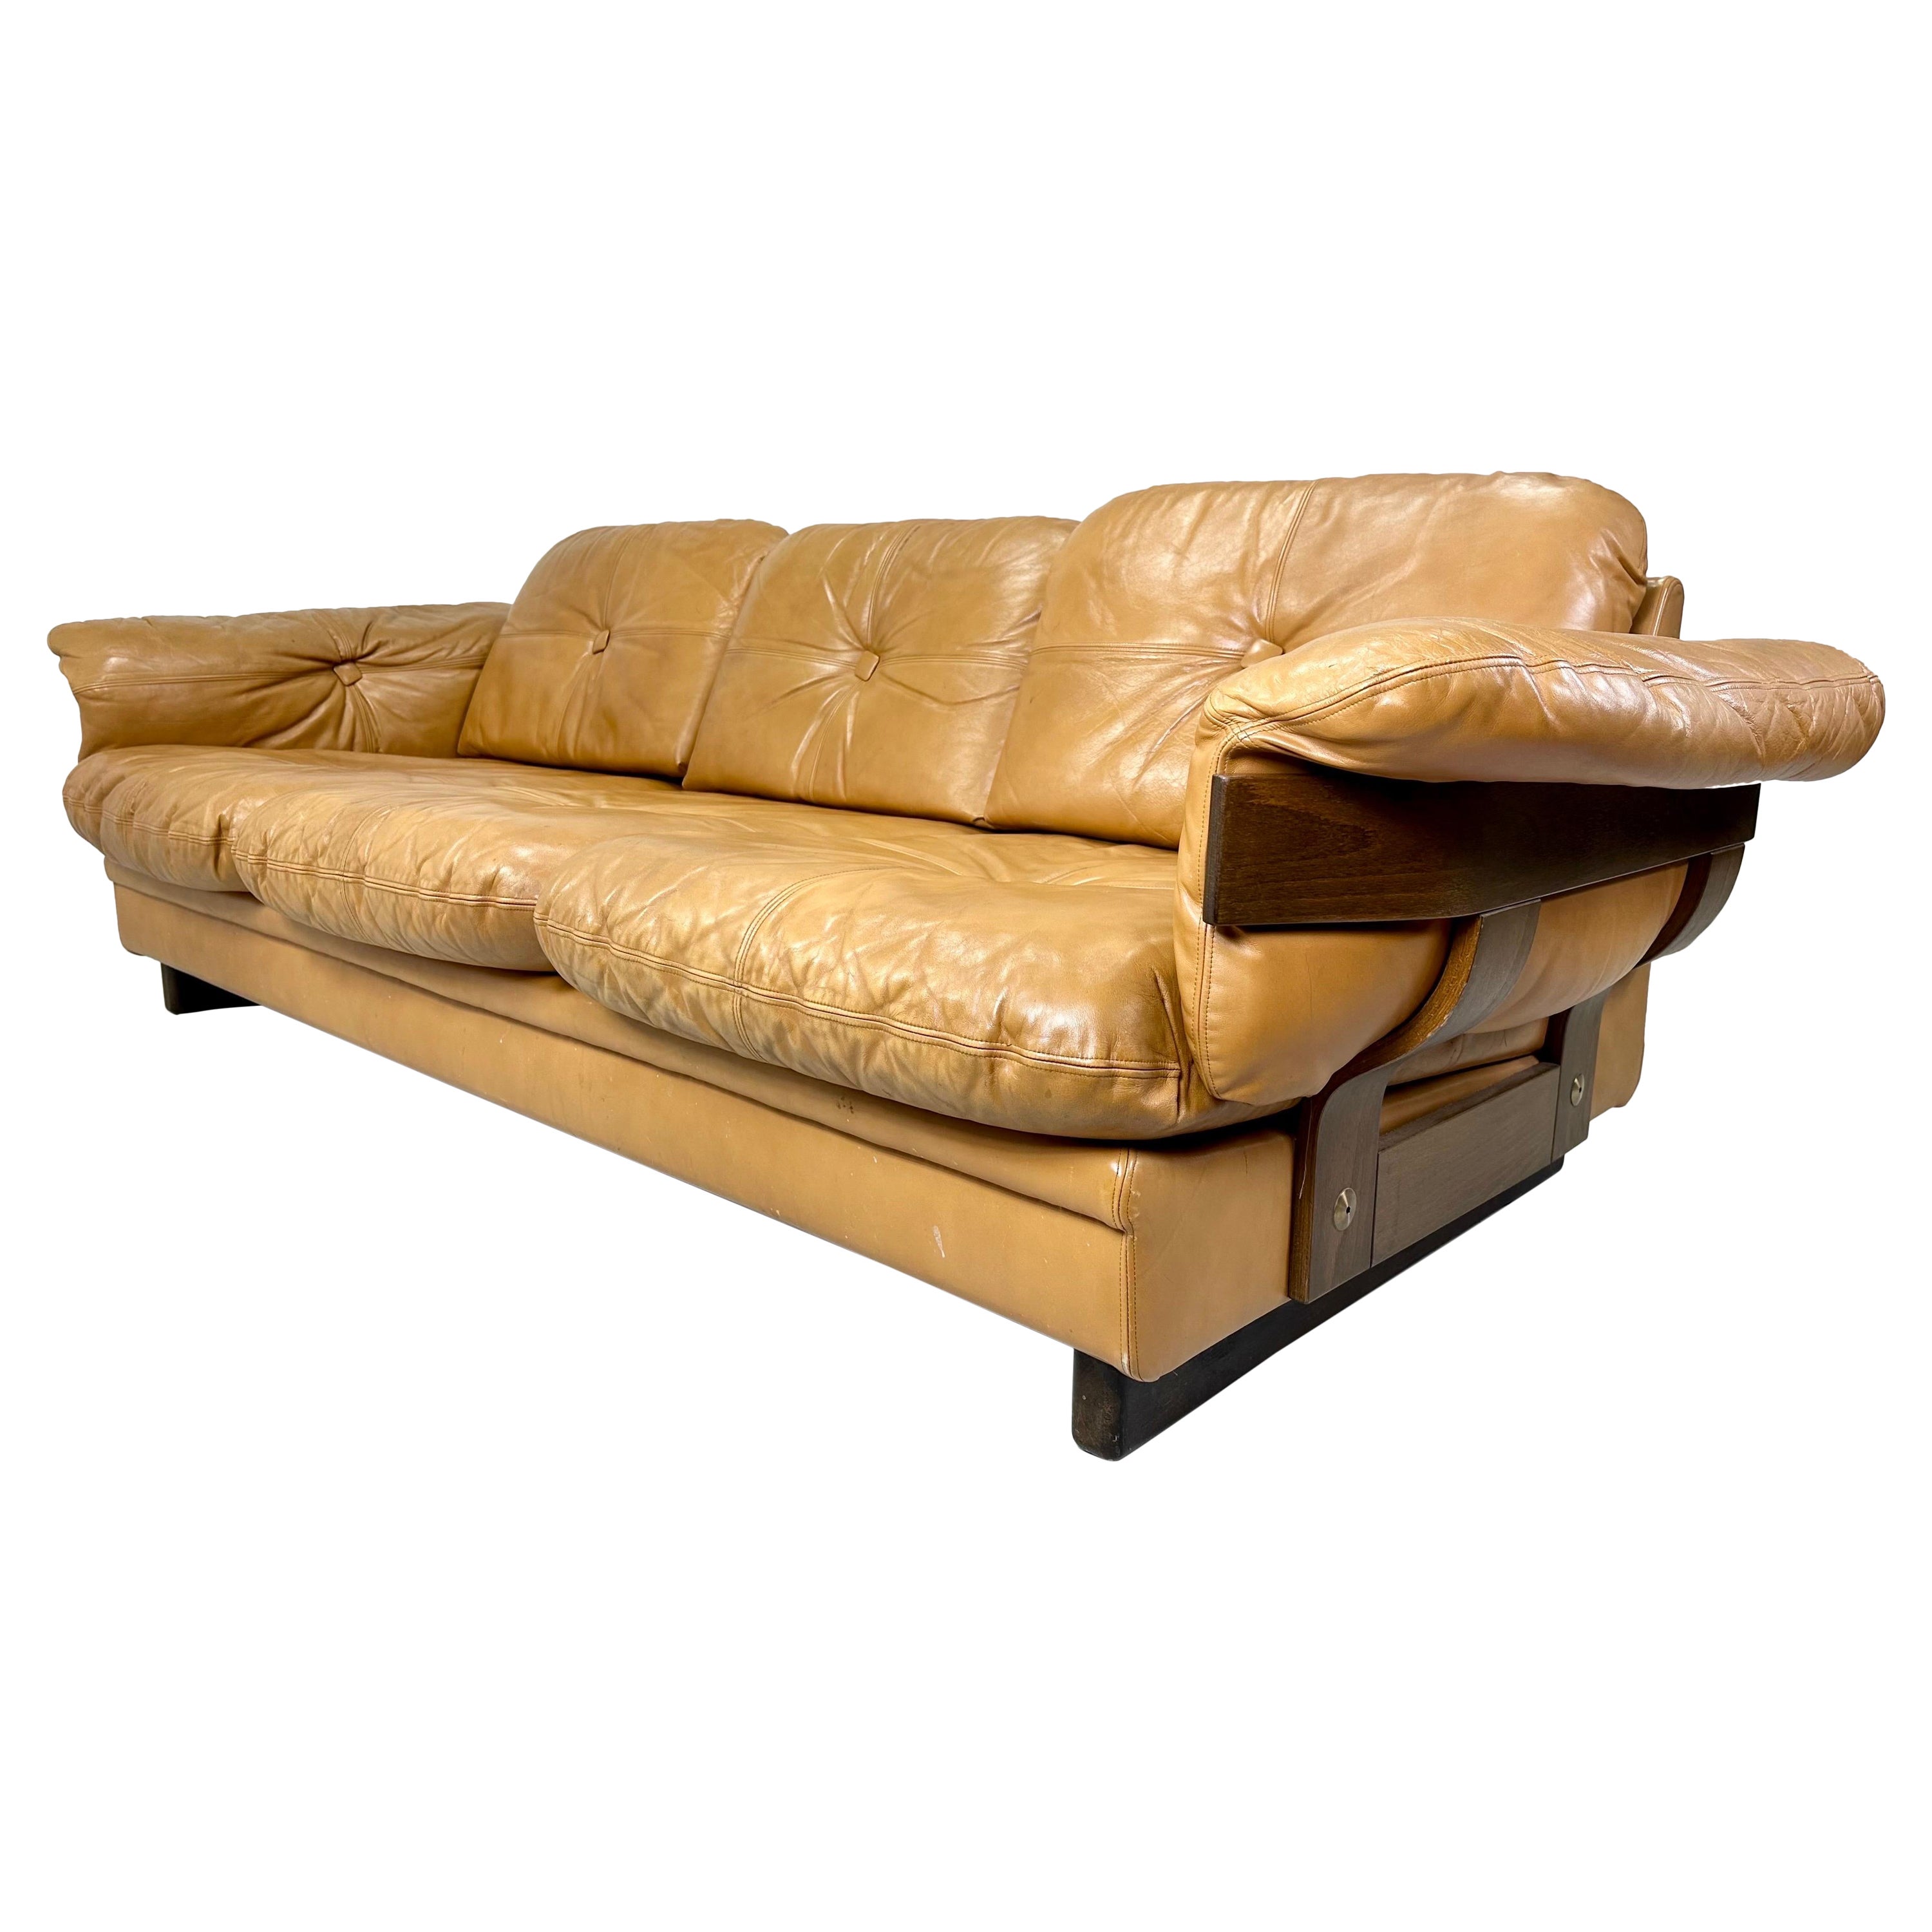 1970’s Leather Sofa